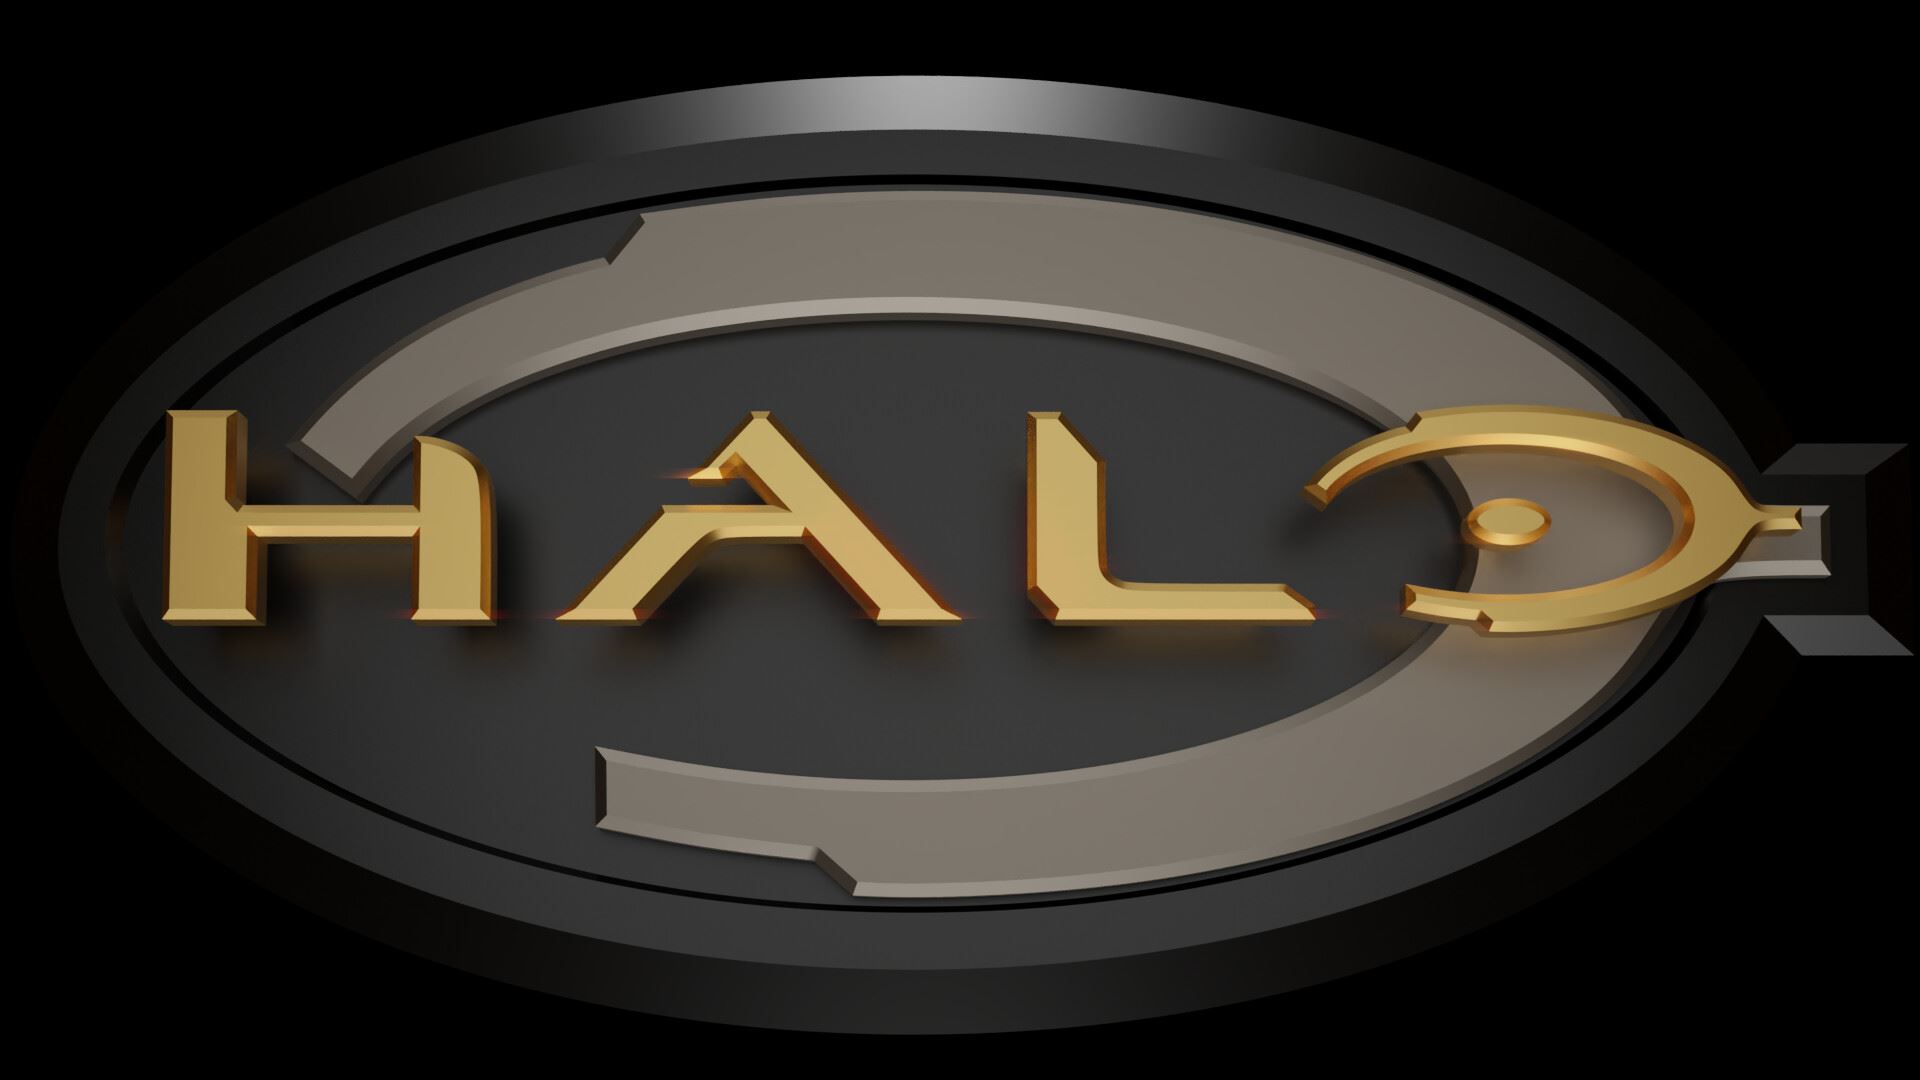 لوگوی Halo با رنگ طلایی